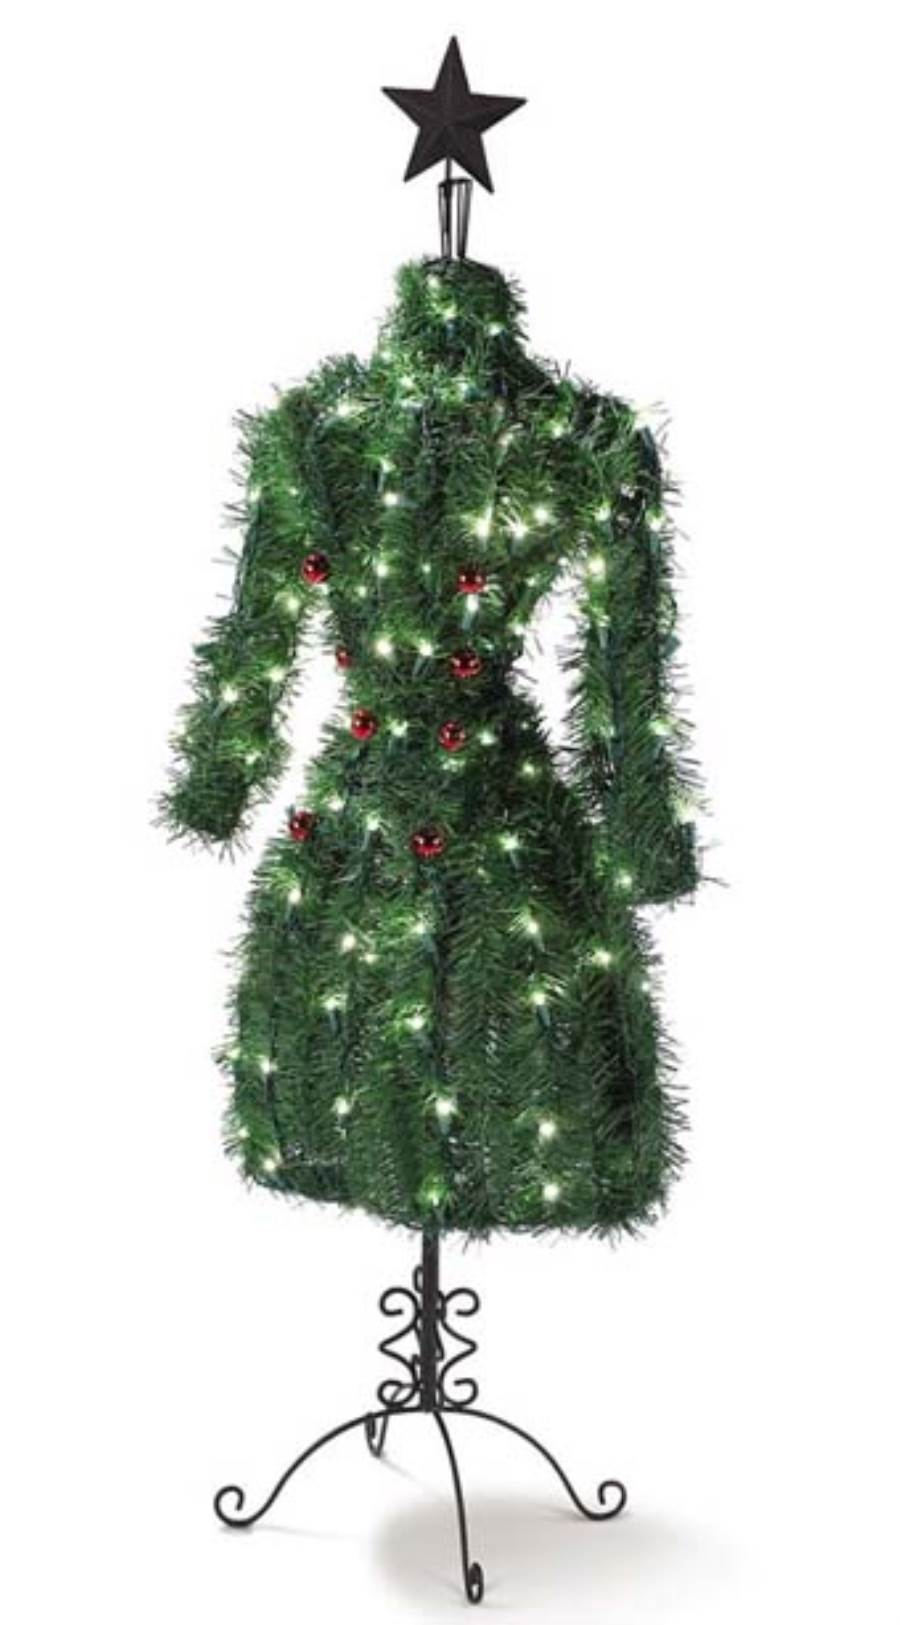  شجرة الكريسماس على شكل فستان من تصميم بريطانى